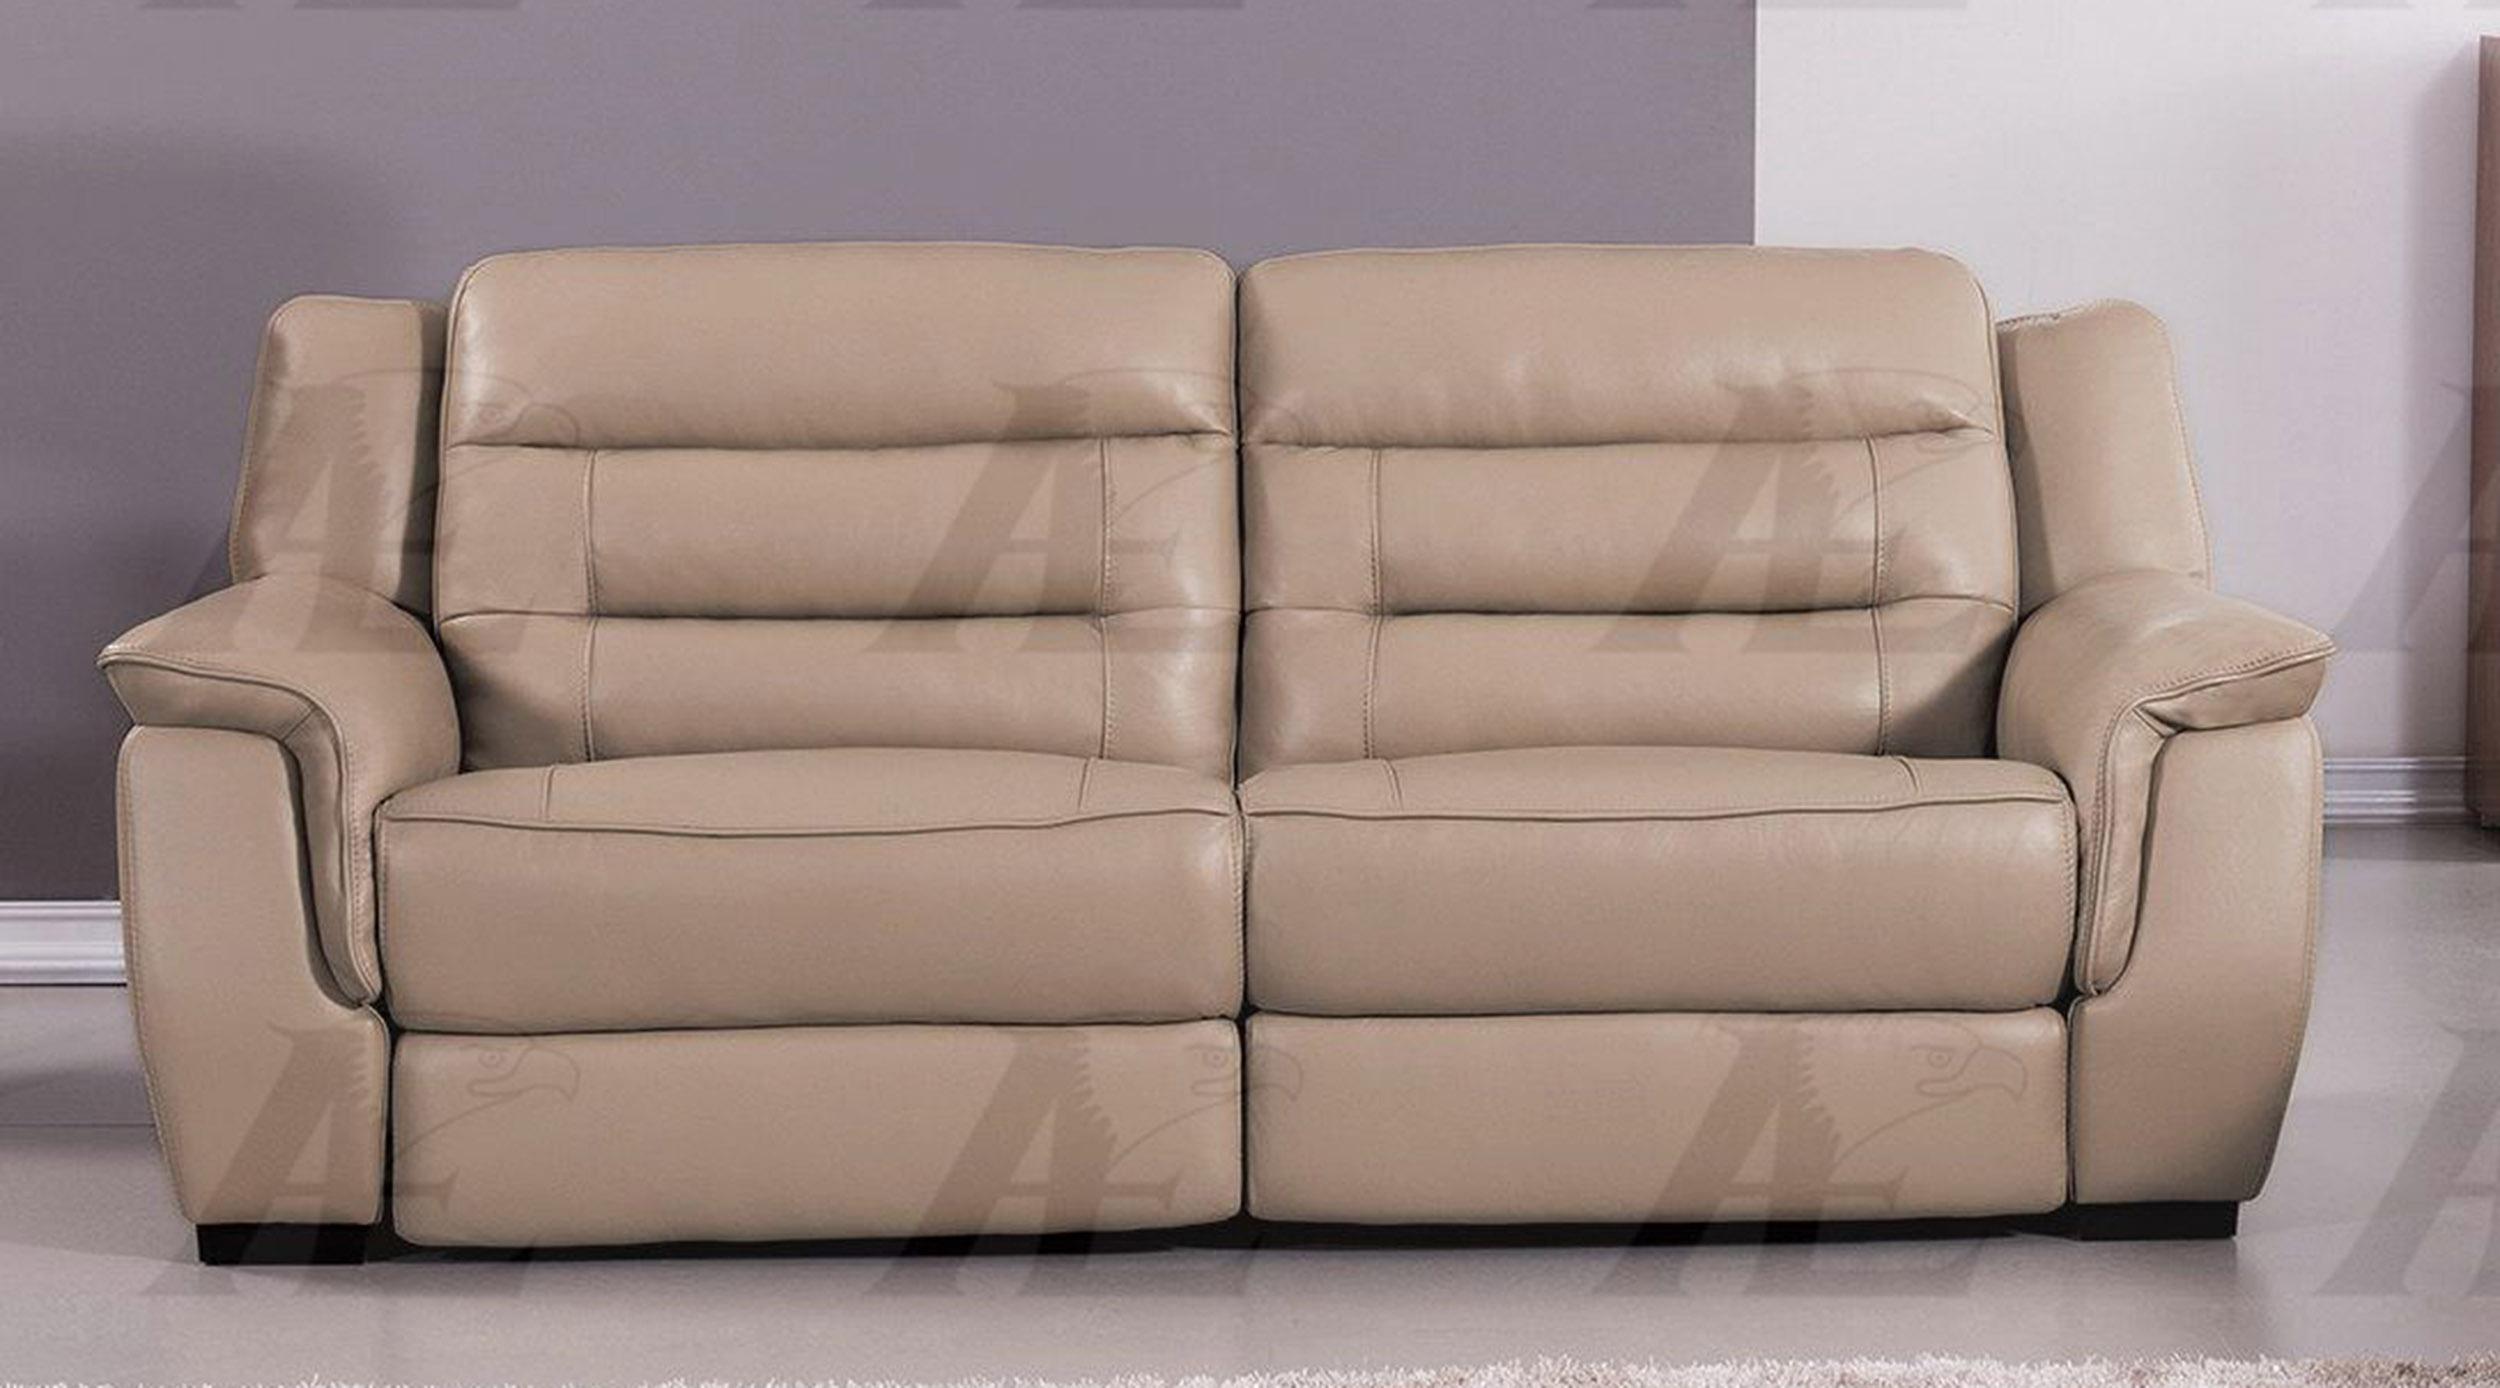 

        
American Eagle Furniture EK089-TAN Reclining Sofa Tan Italian Leather 00656237667495
